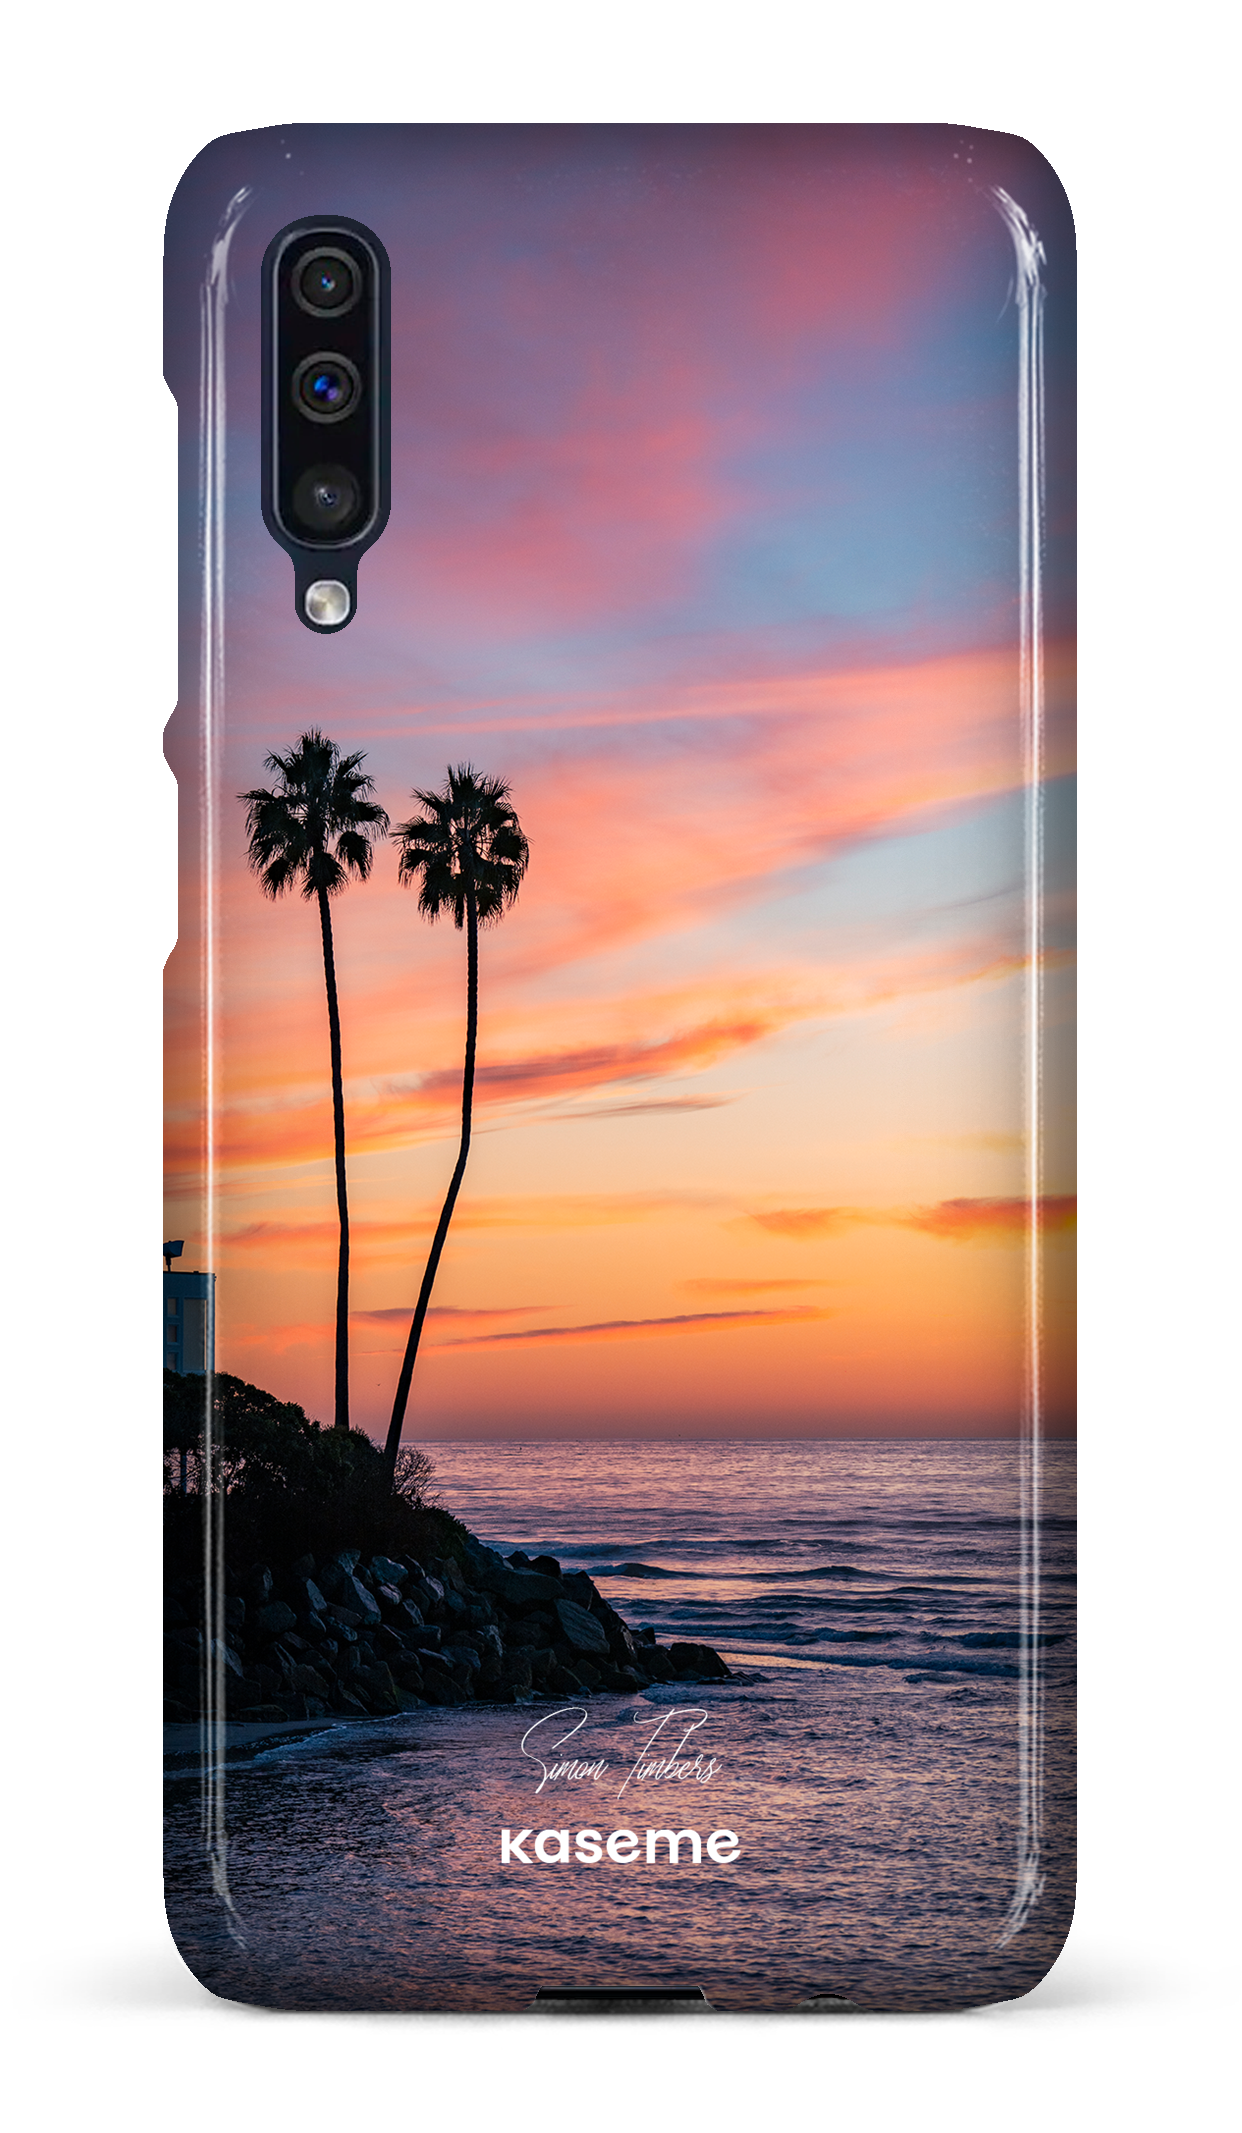 Sunset Palms by Simon Timbers - Galaxy A50